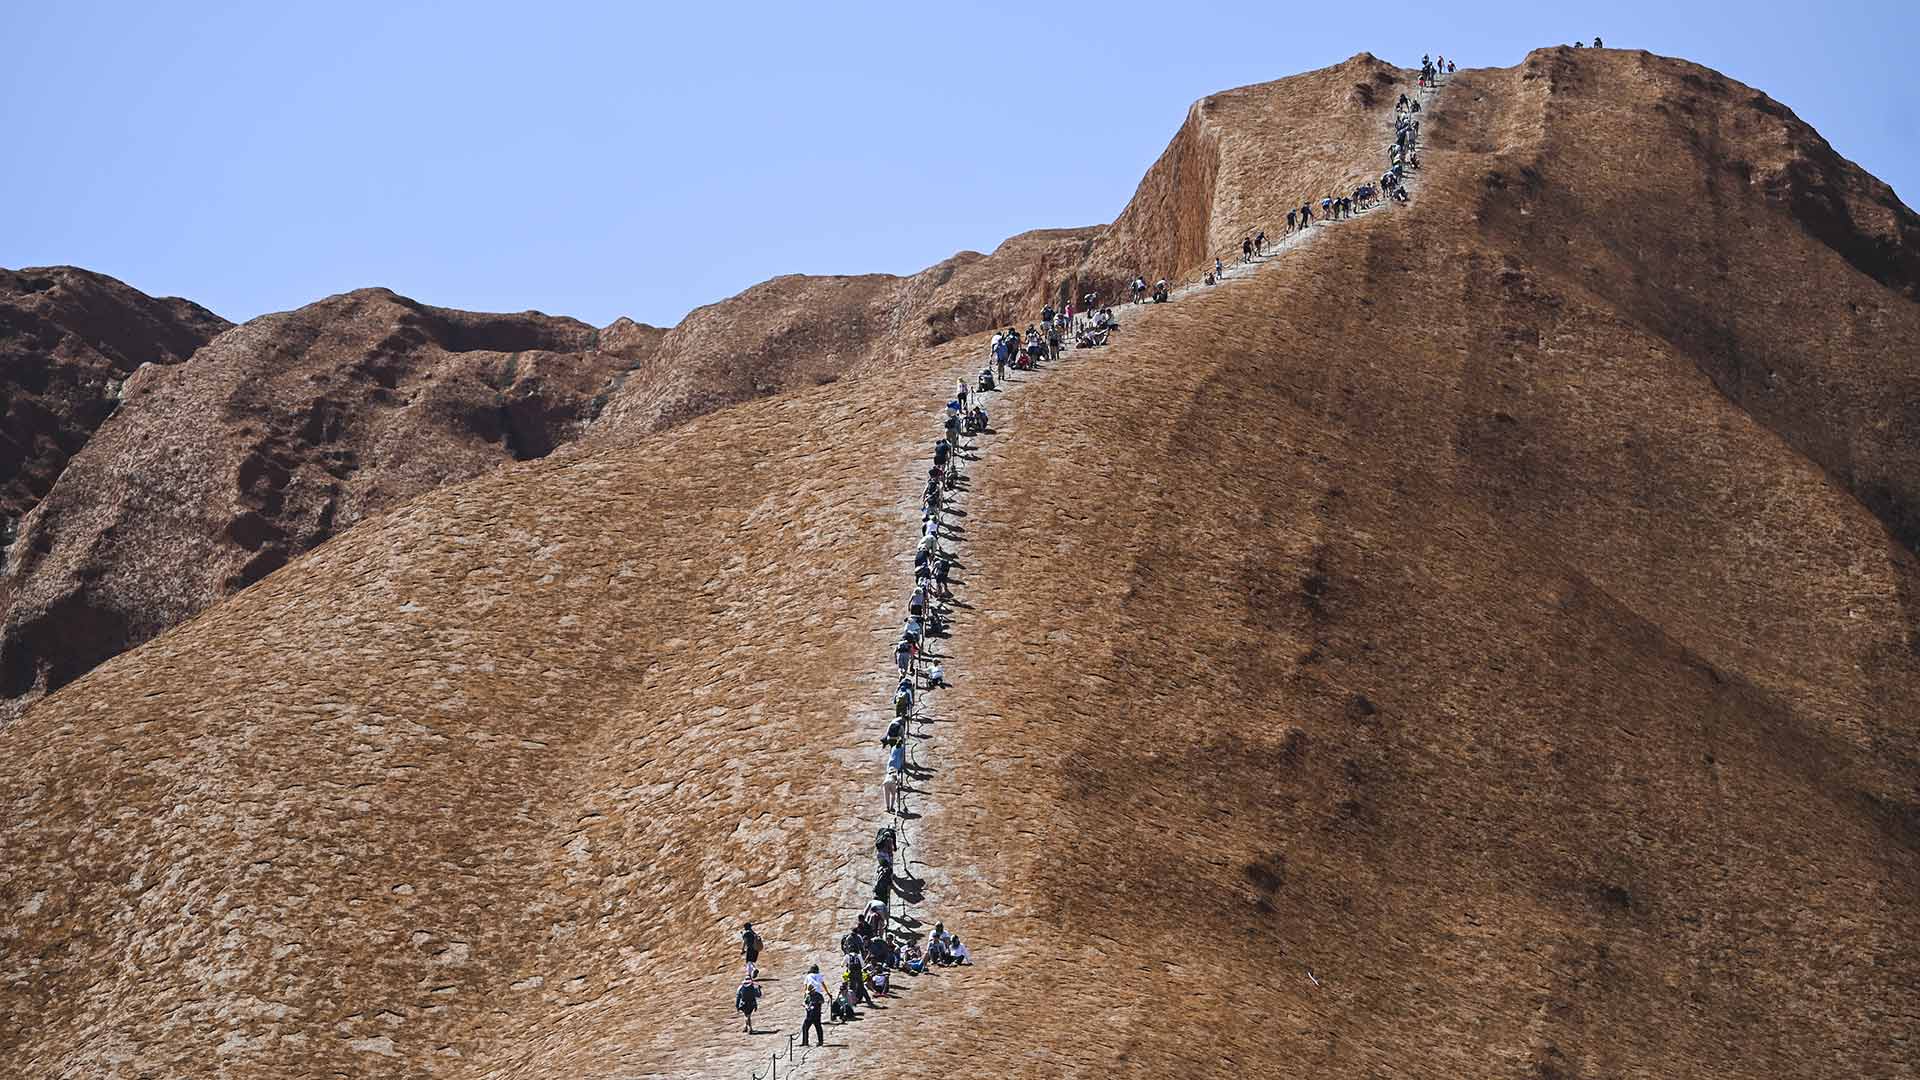 Cientos de turistas acuden al monolito Uluru antes de que Australia cierre el acceso